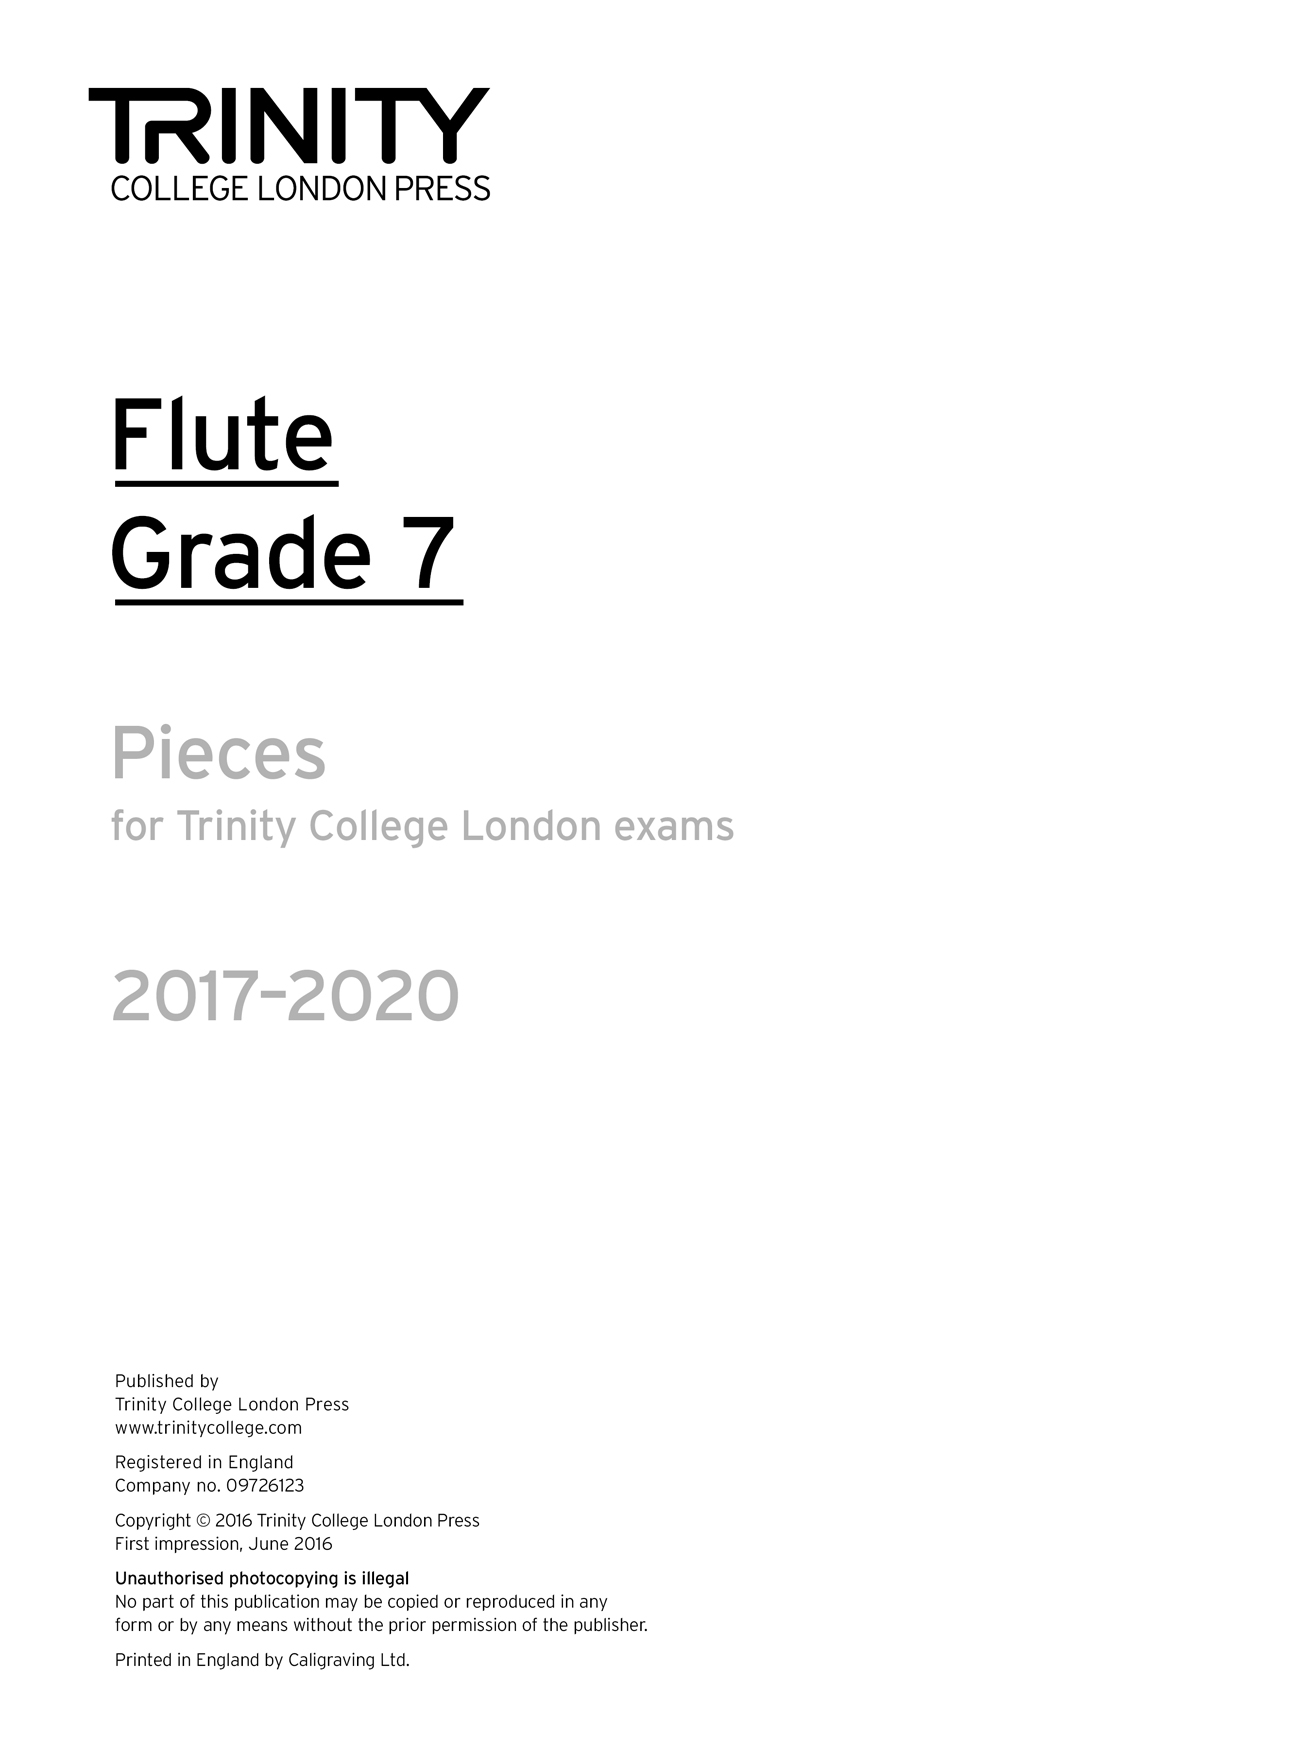 Flute Exam 2017-2020 - Grade 7: Flute: Part